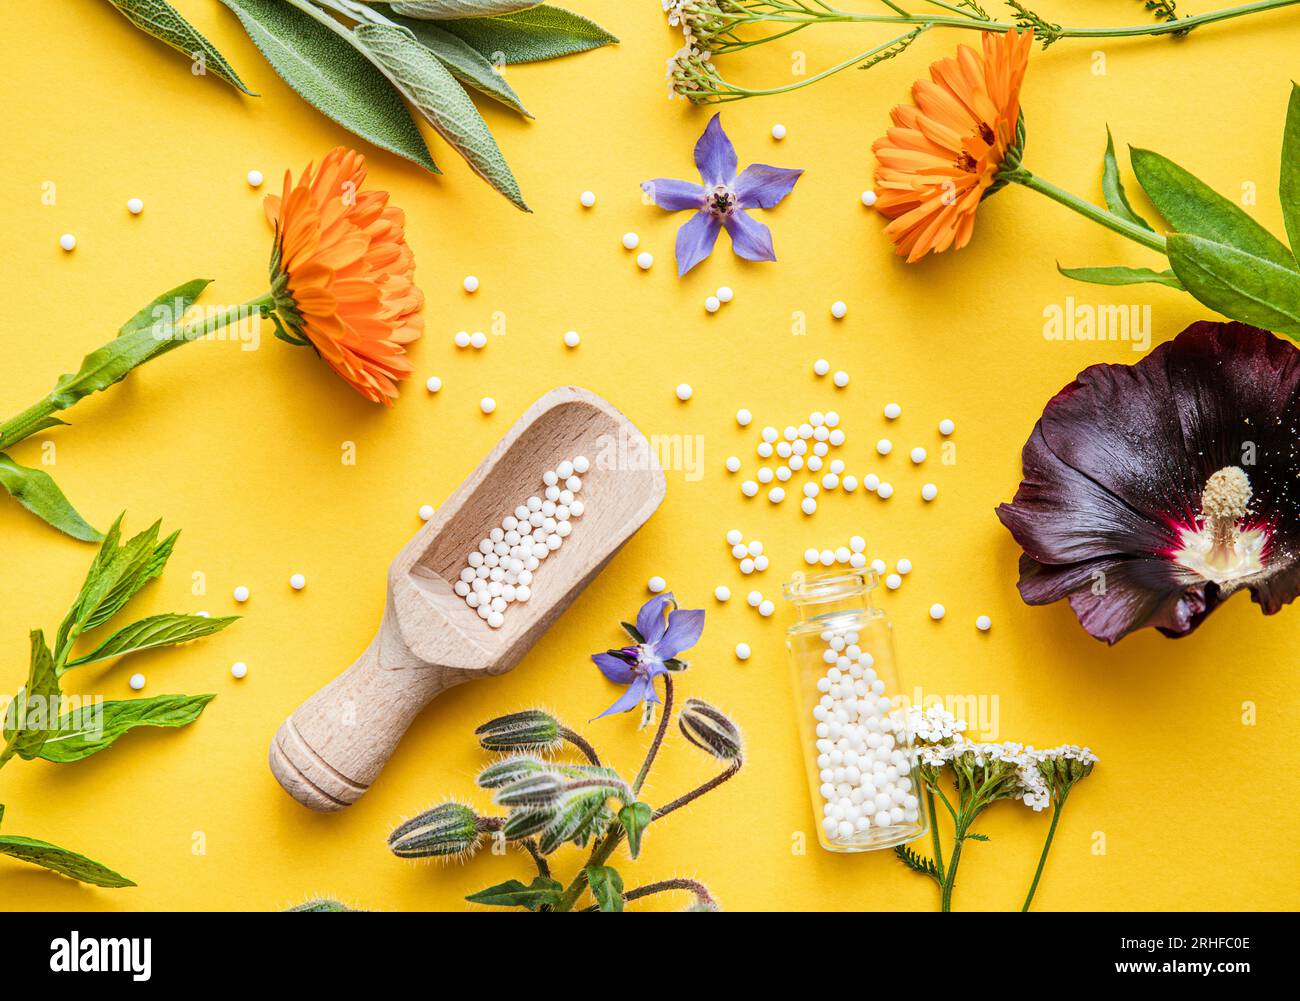 Flache Lay-Ansicht homöopathische Medizin Pillen in Gläsern und verschüttet herum auf gelbem Hintergrund, dekoriert mit frischen verschiedenen Kräutern und Pflanzen, Blumen. Stockfoto